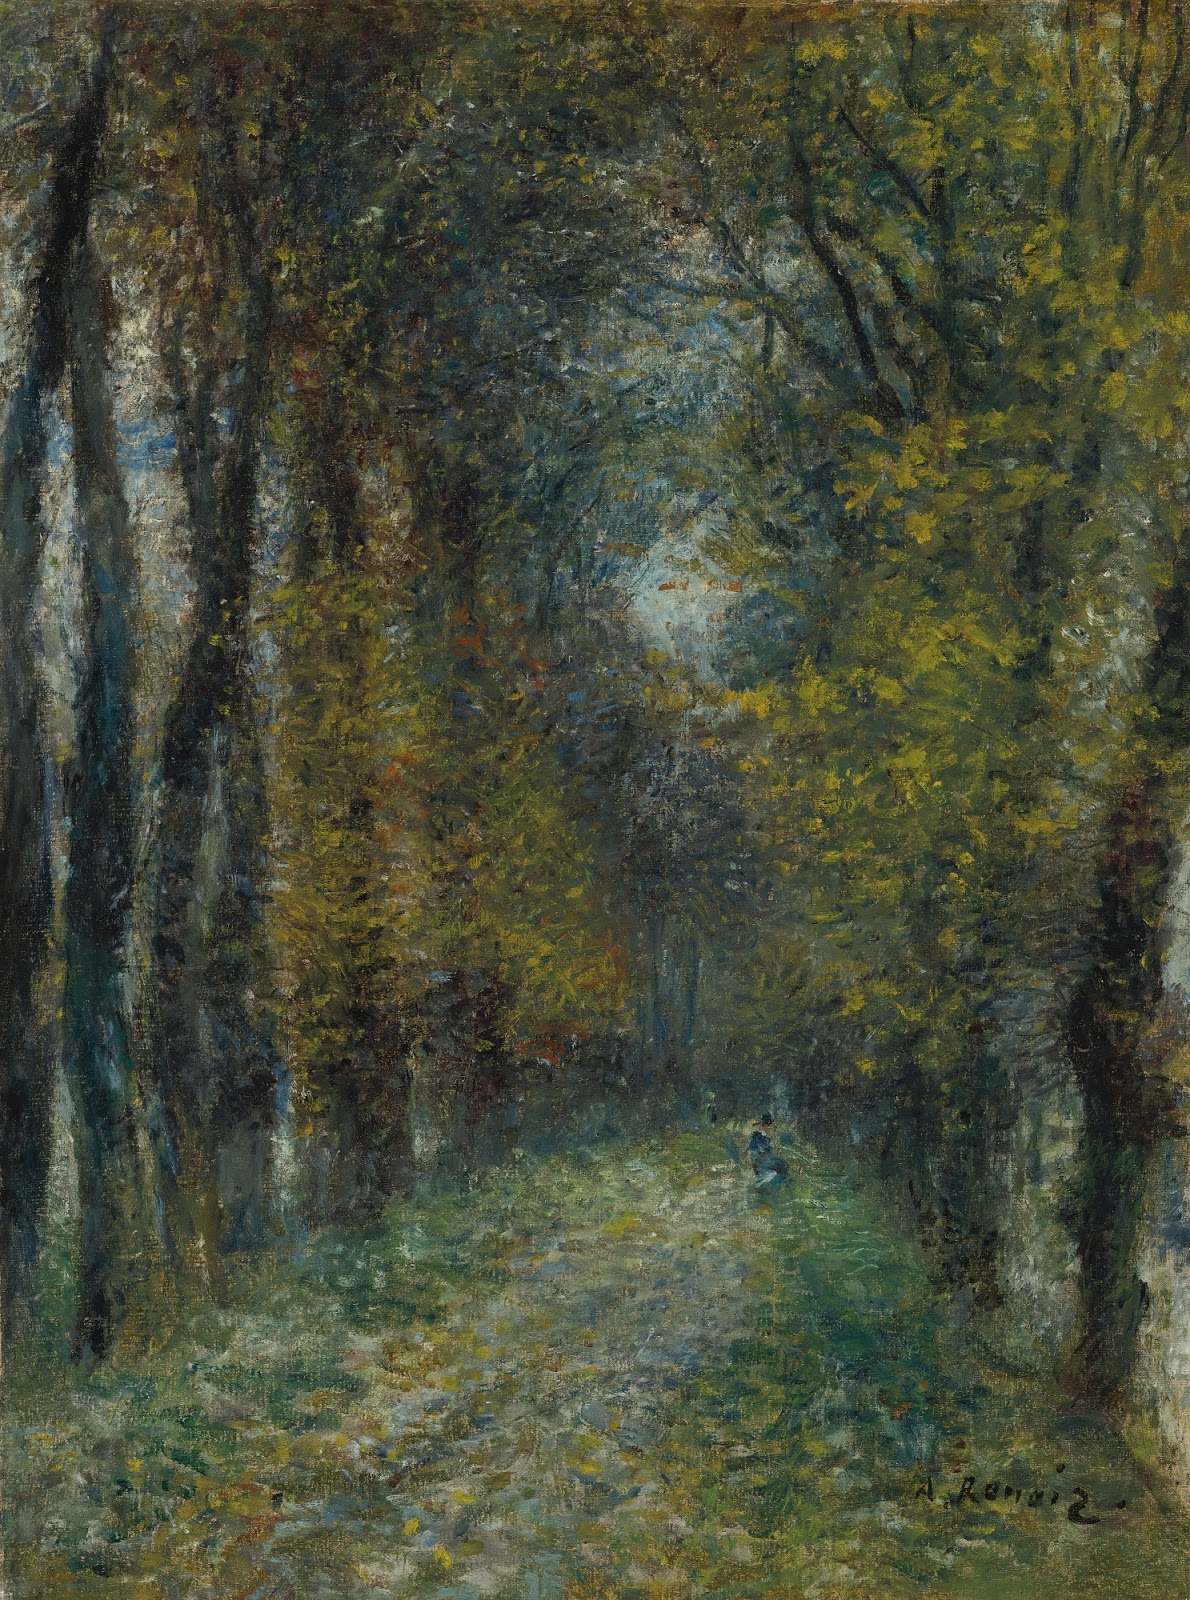 Pierre+Auguste+Renoir-1841-1-19 (520).jpg